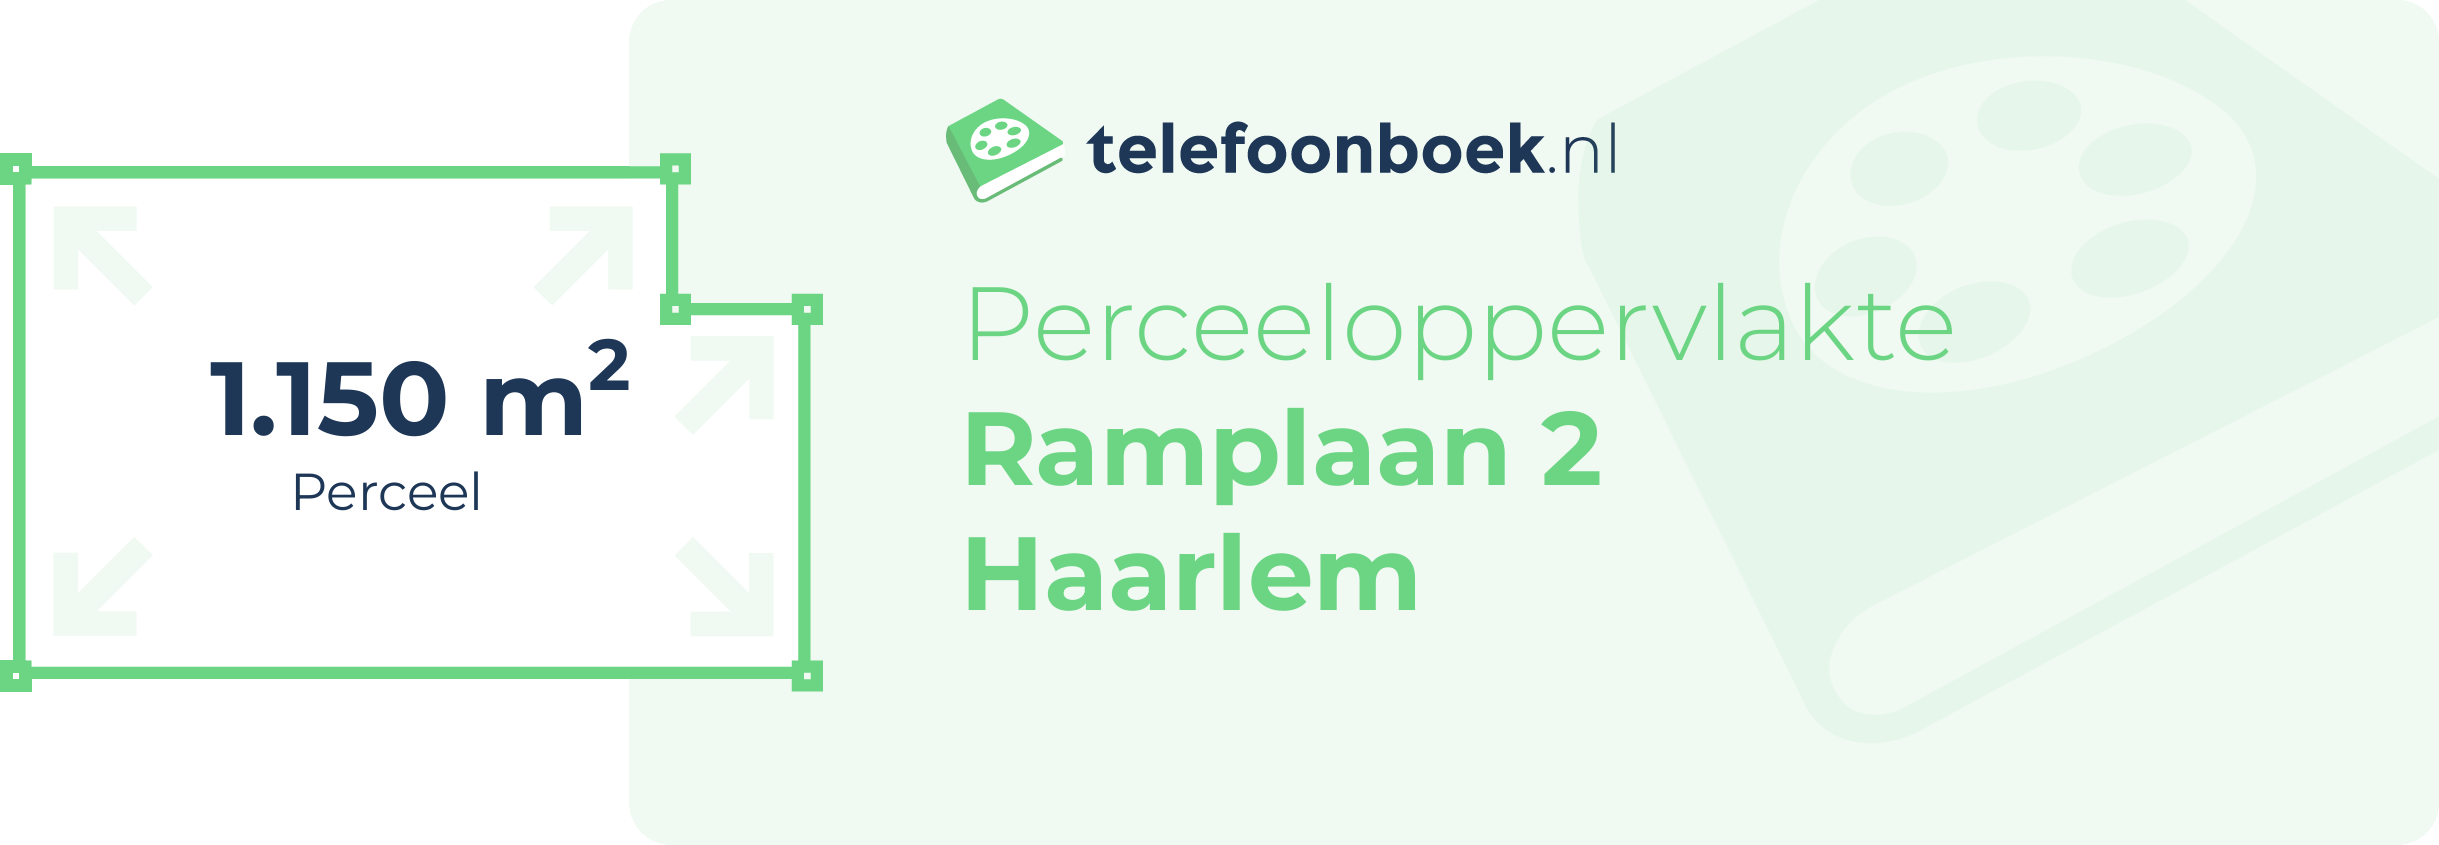 Perceeloppervlakte Ramplaan 2 Haarlem